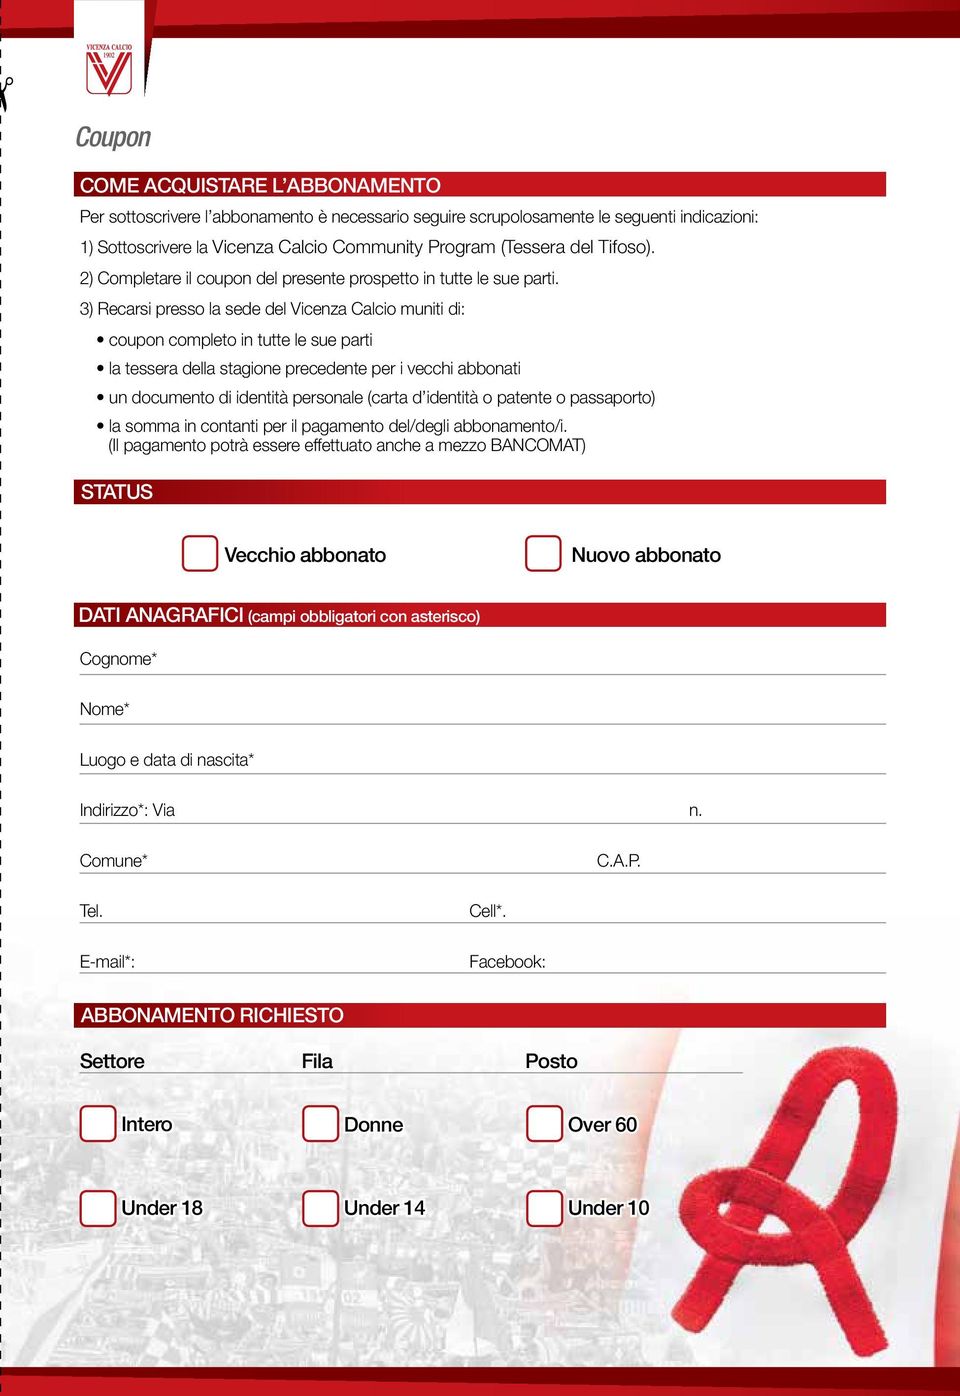 3) Recarsi presso la sede del Vicenza Calcio muniti di: coupon completo in tutte le sue parti la tessera della stagione precedente per i vecchi abbonati un documento di identità personale (carta d